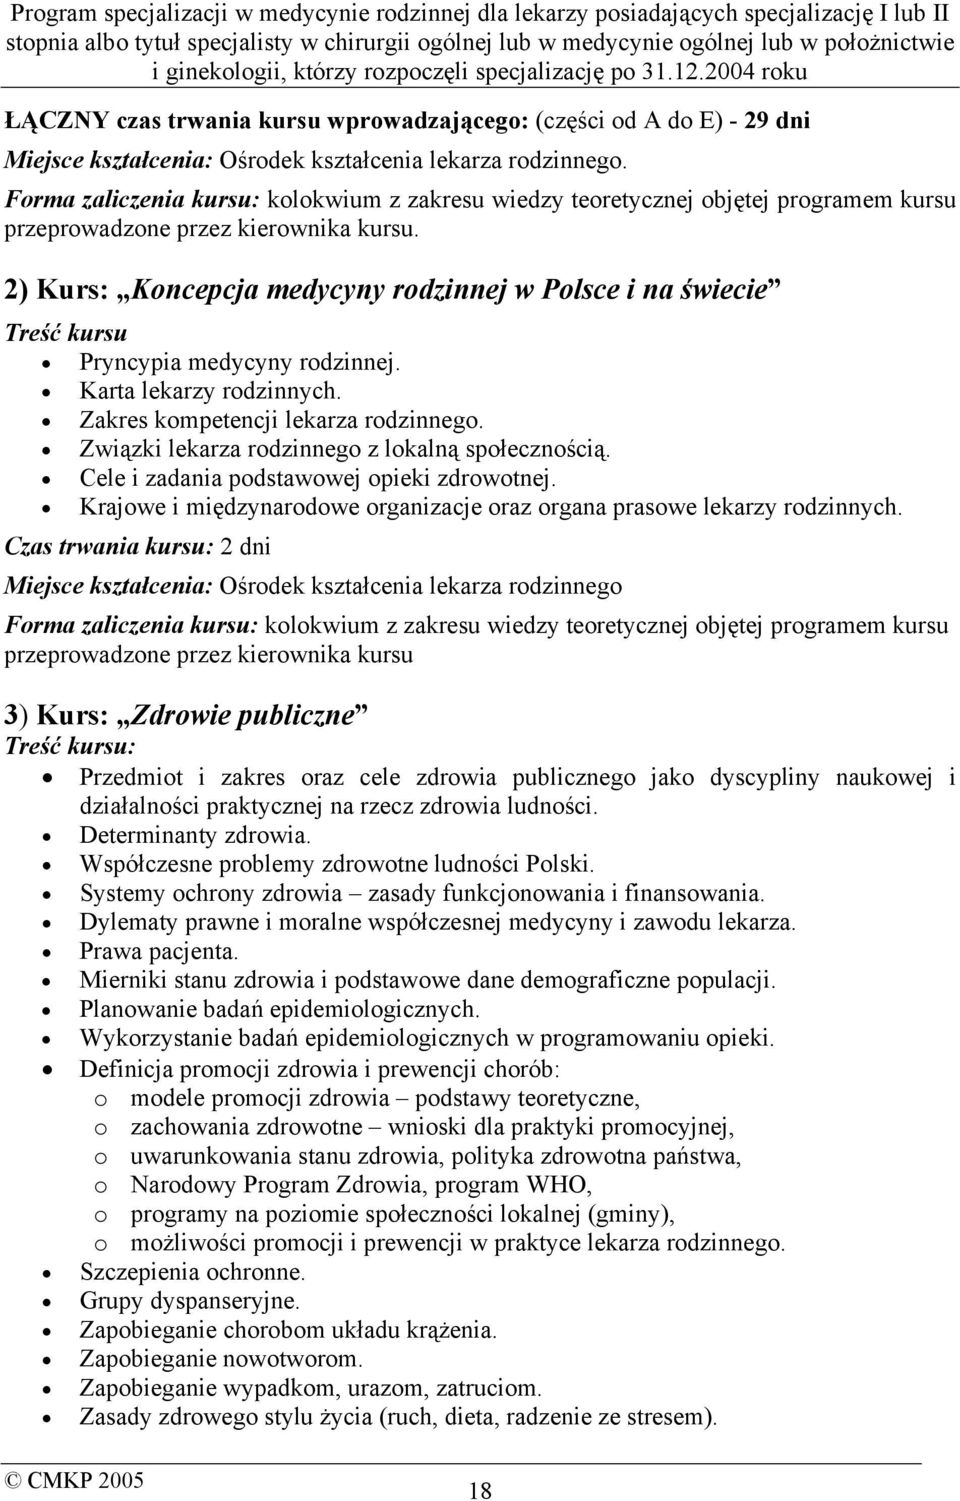 2) Kurs: Koncepcja medycyny rodzinnej w Polsce i na świecie Treść kursu Pryncypia medycyny rodzinnej. Karta lekarzy rodzinnych. Zakres kompetencji lekarza rodzinnego.